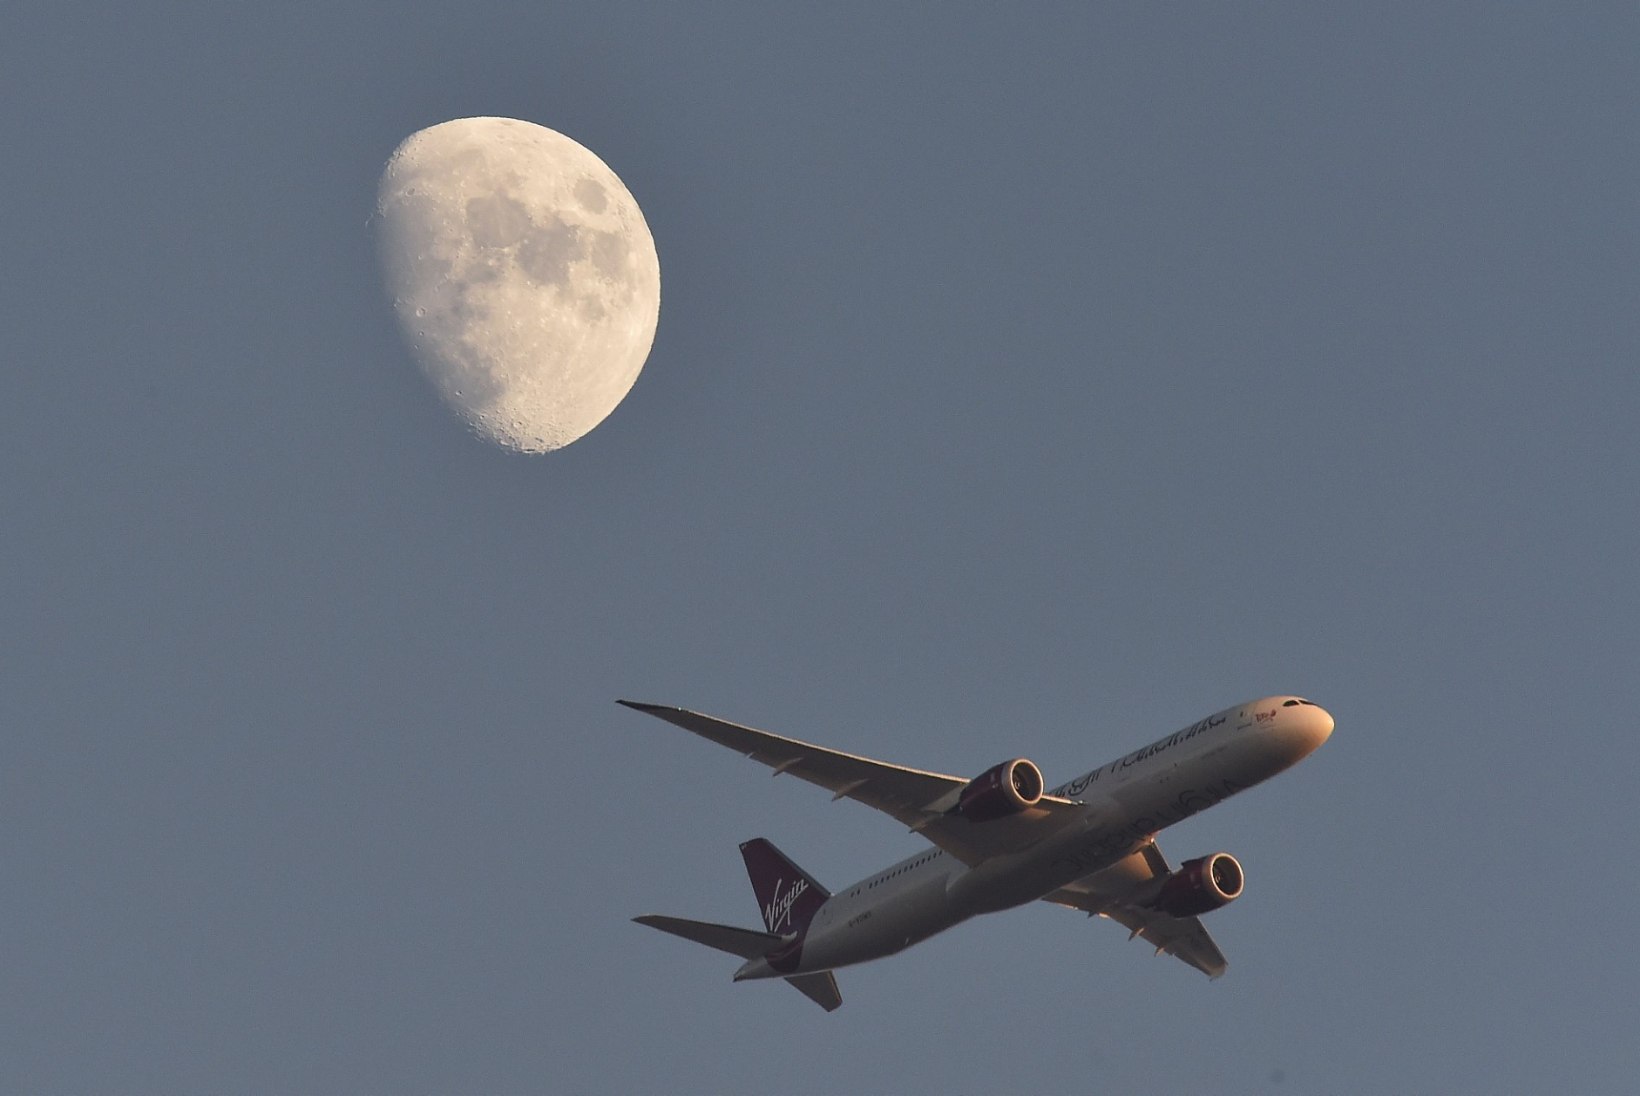 Virgin Atlanticu lennuk pöördus tagasi Heathrow'le, pilooti pimestas laserkiir